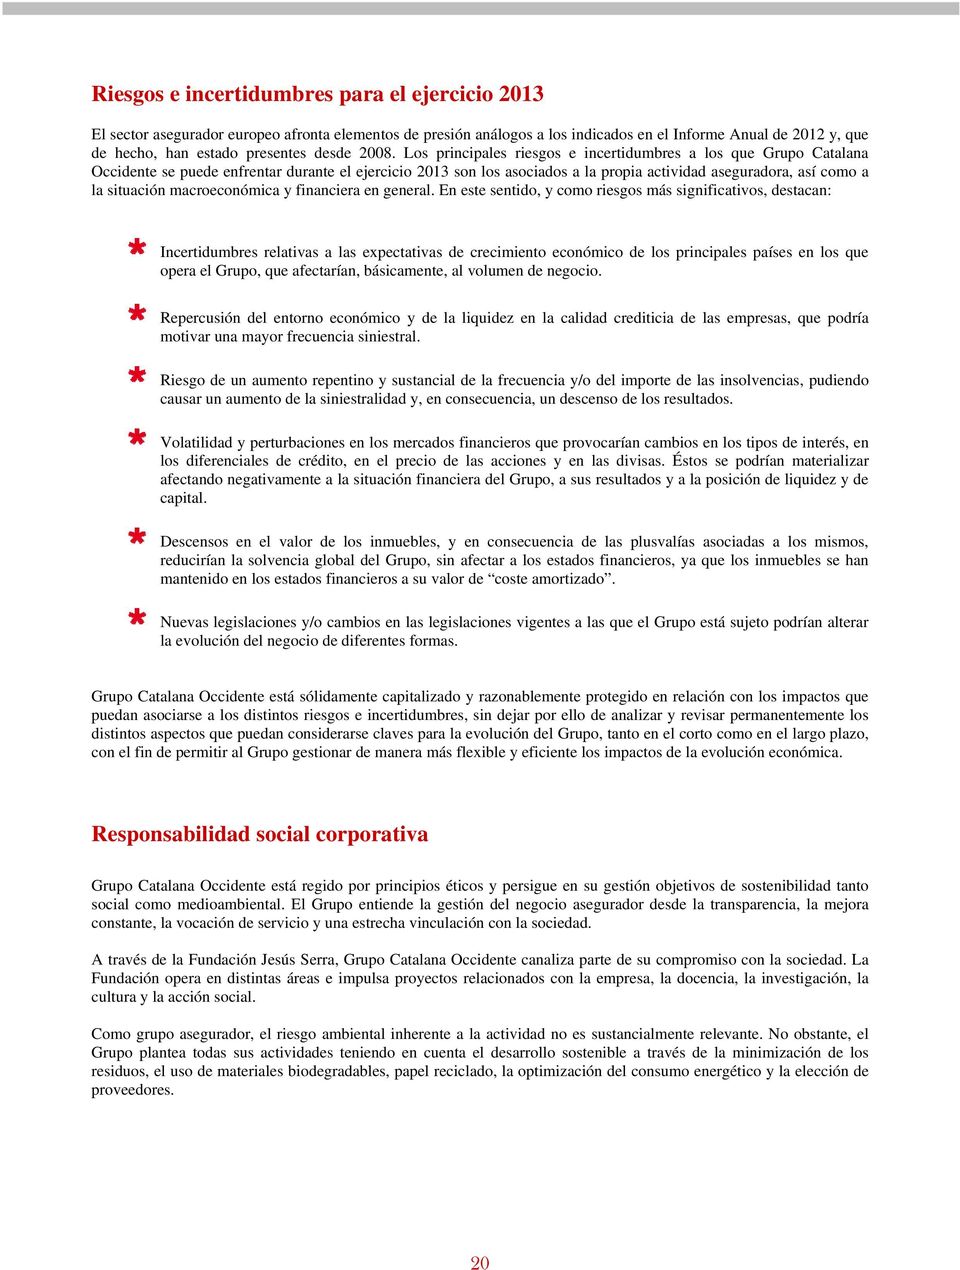 Los principales riesgos e incertidumbres a los que Grupo Catalana Occidente se puede enfrentar durante el ejercicio 2013 son los asociados a la propia actividad aseguradora, así como a la situación